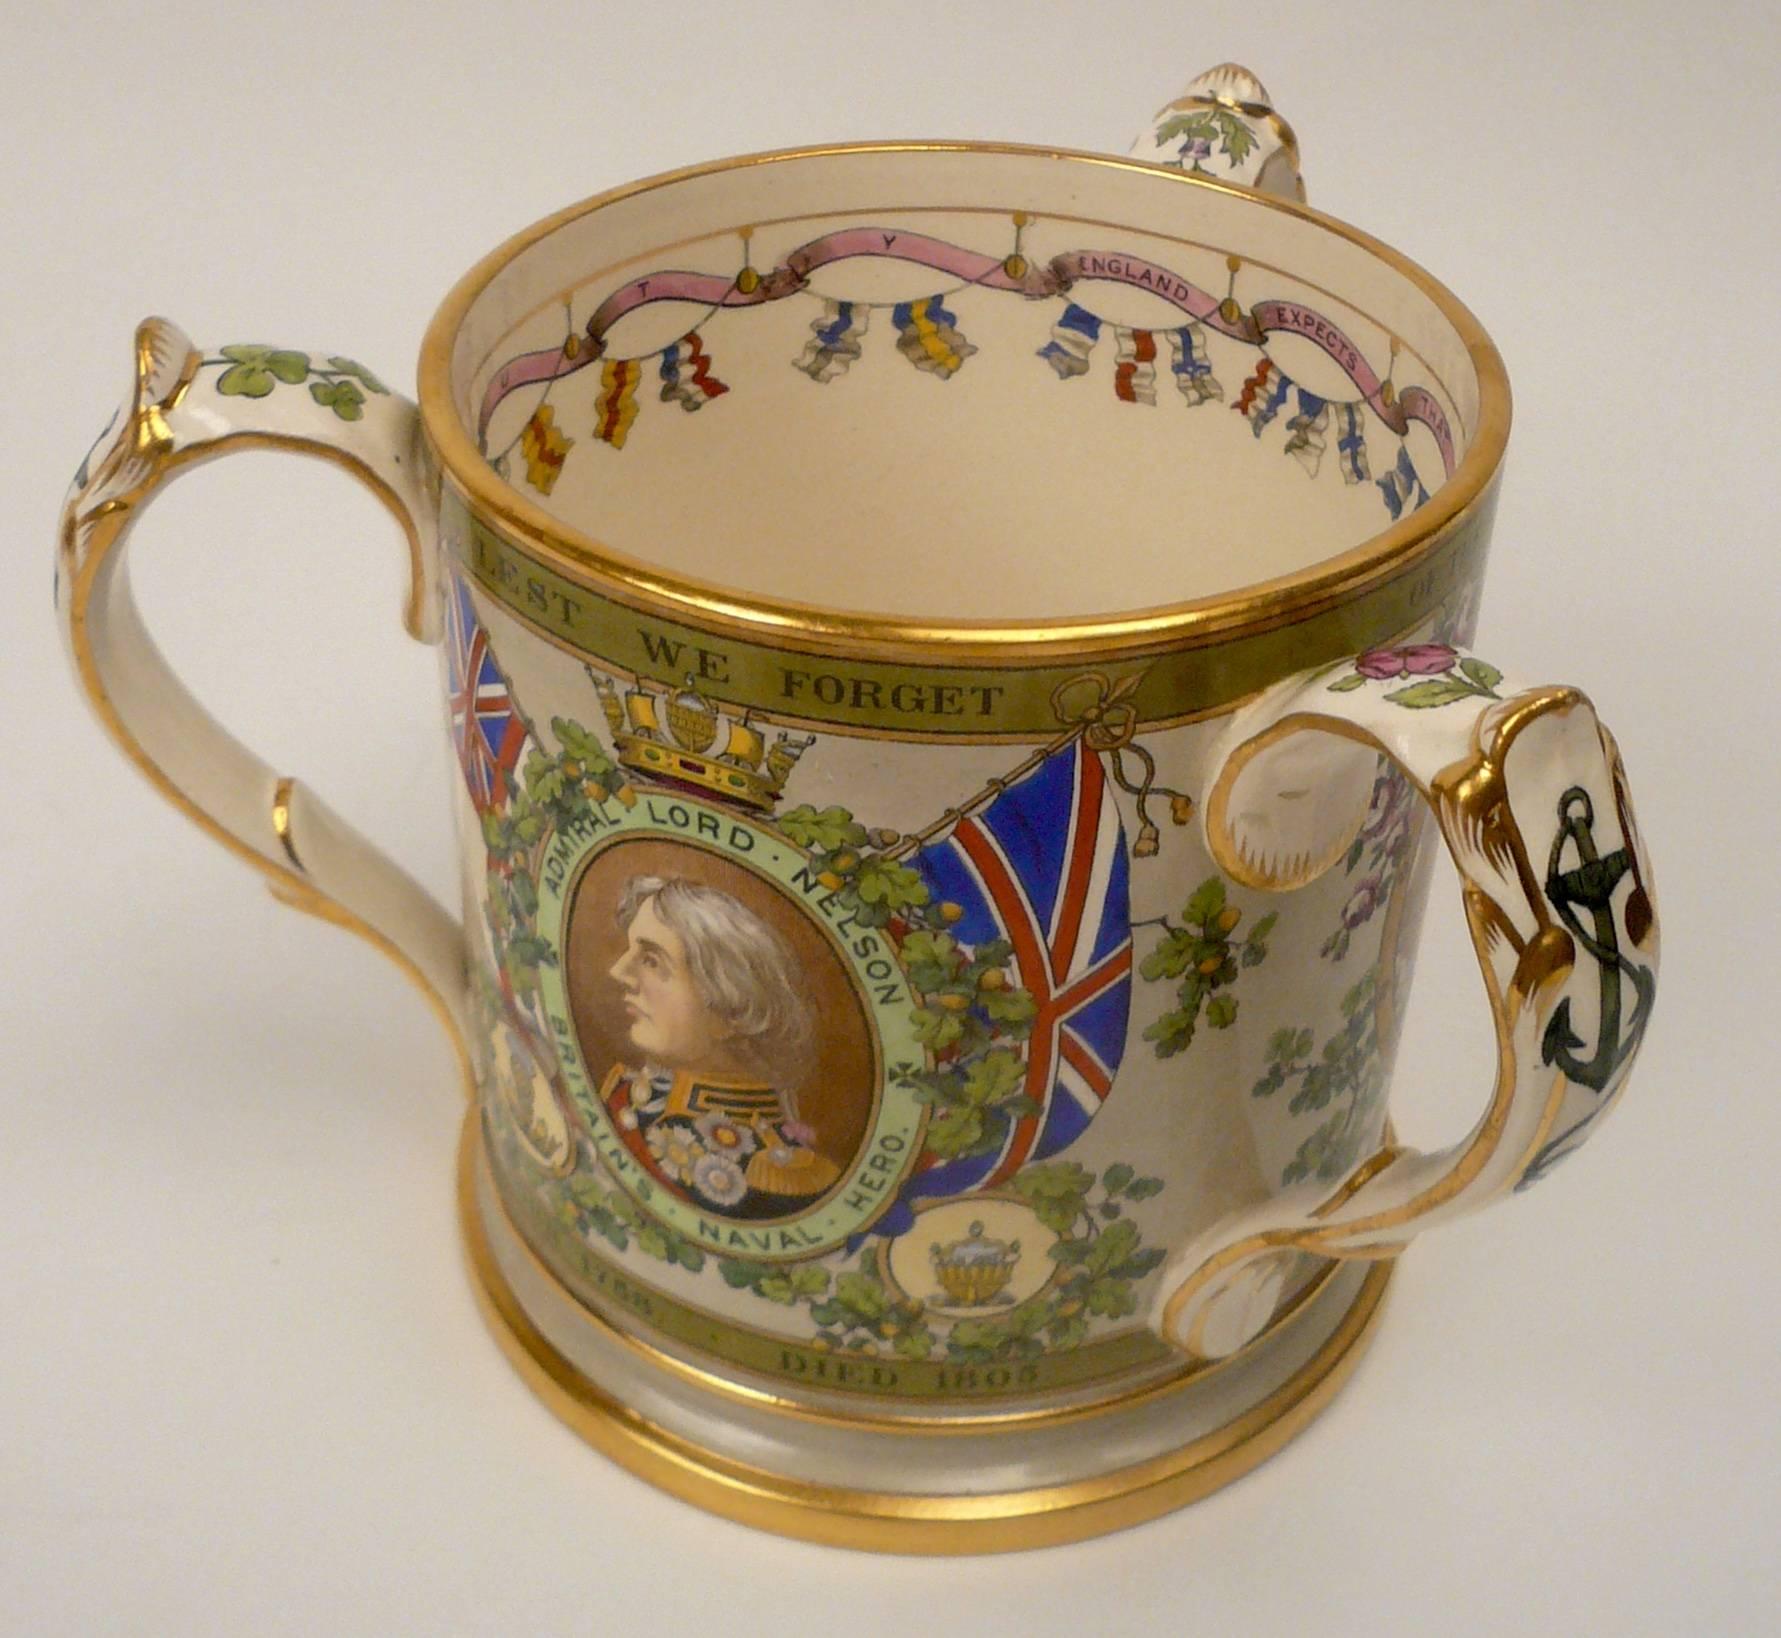 Une Tyg en porcelaine du centenaire de Trafalgar 